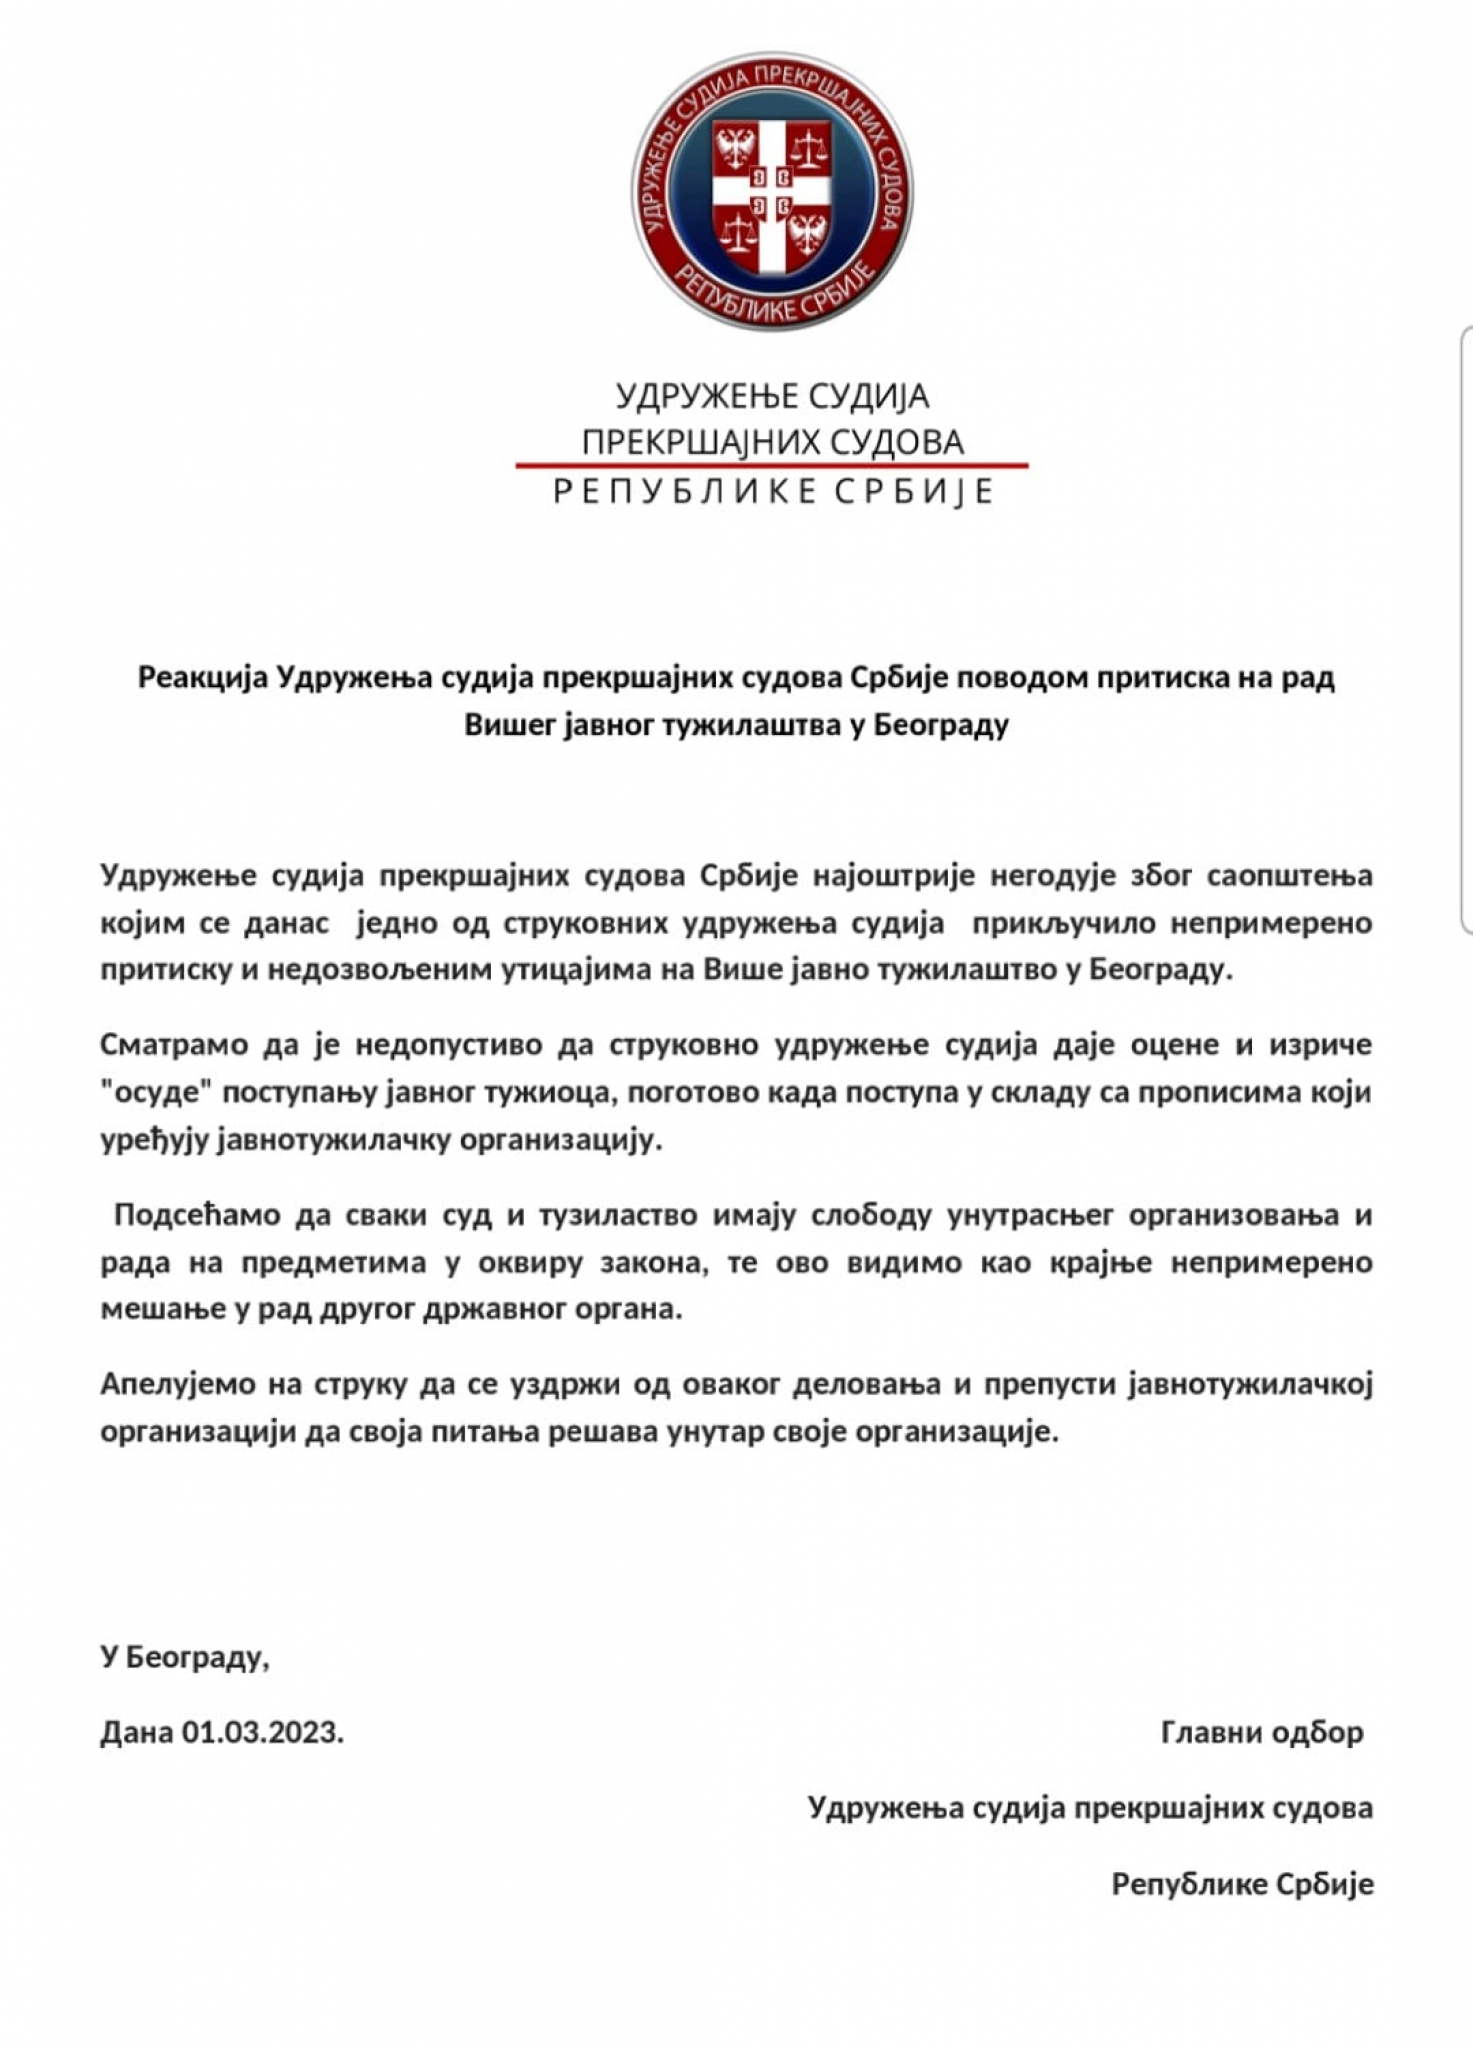 NAJOŠTRIJE NEOGODOVANJE Udruženje sudija Srbije reagovalo povodom pritiska na rad VJT u Beogradu